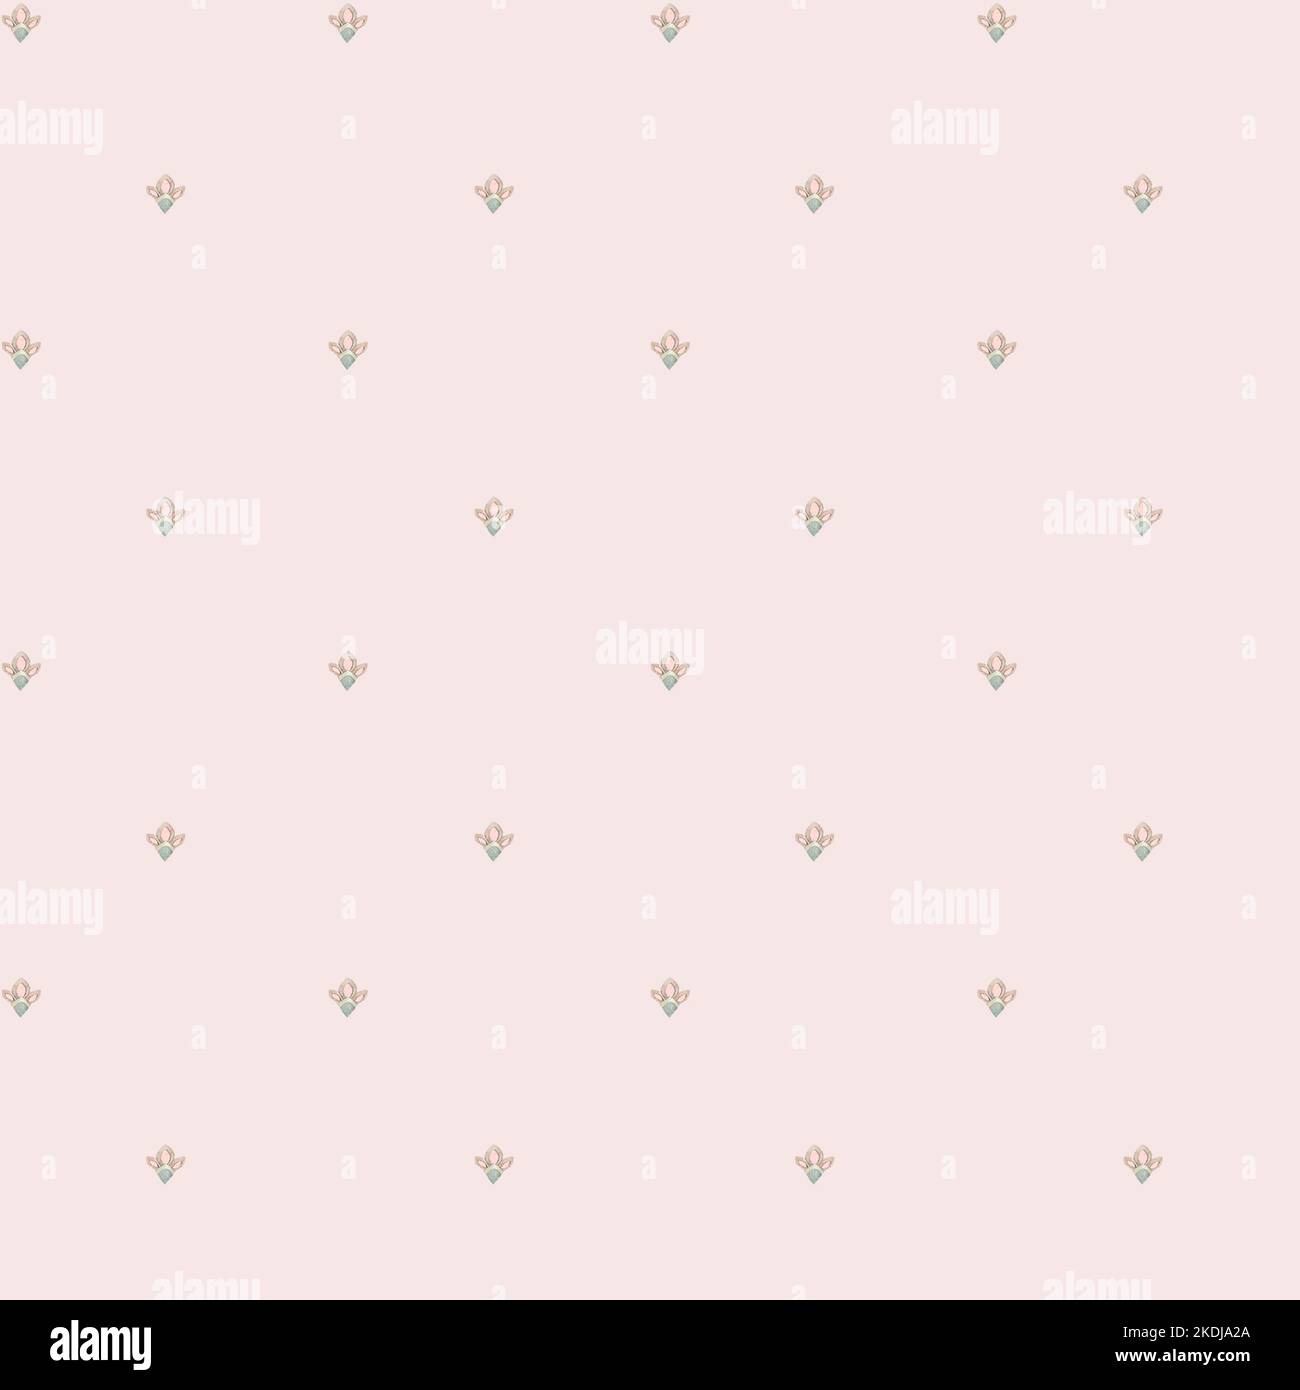 Knospen, rosa. Companion Muster von Hand in Aquarell gemalt. Verwendet in modernen und stilvollen Interior Design, Corporate Identity, Website-Design, Druck, Stockfoto